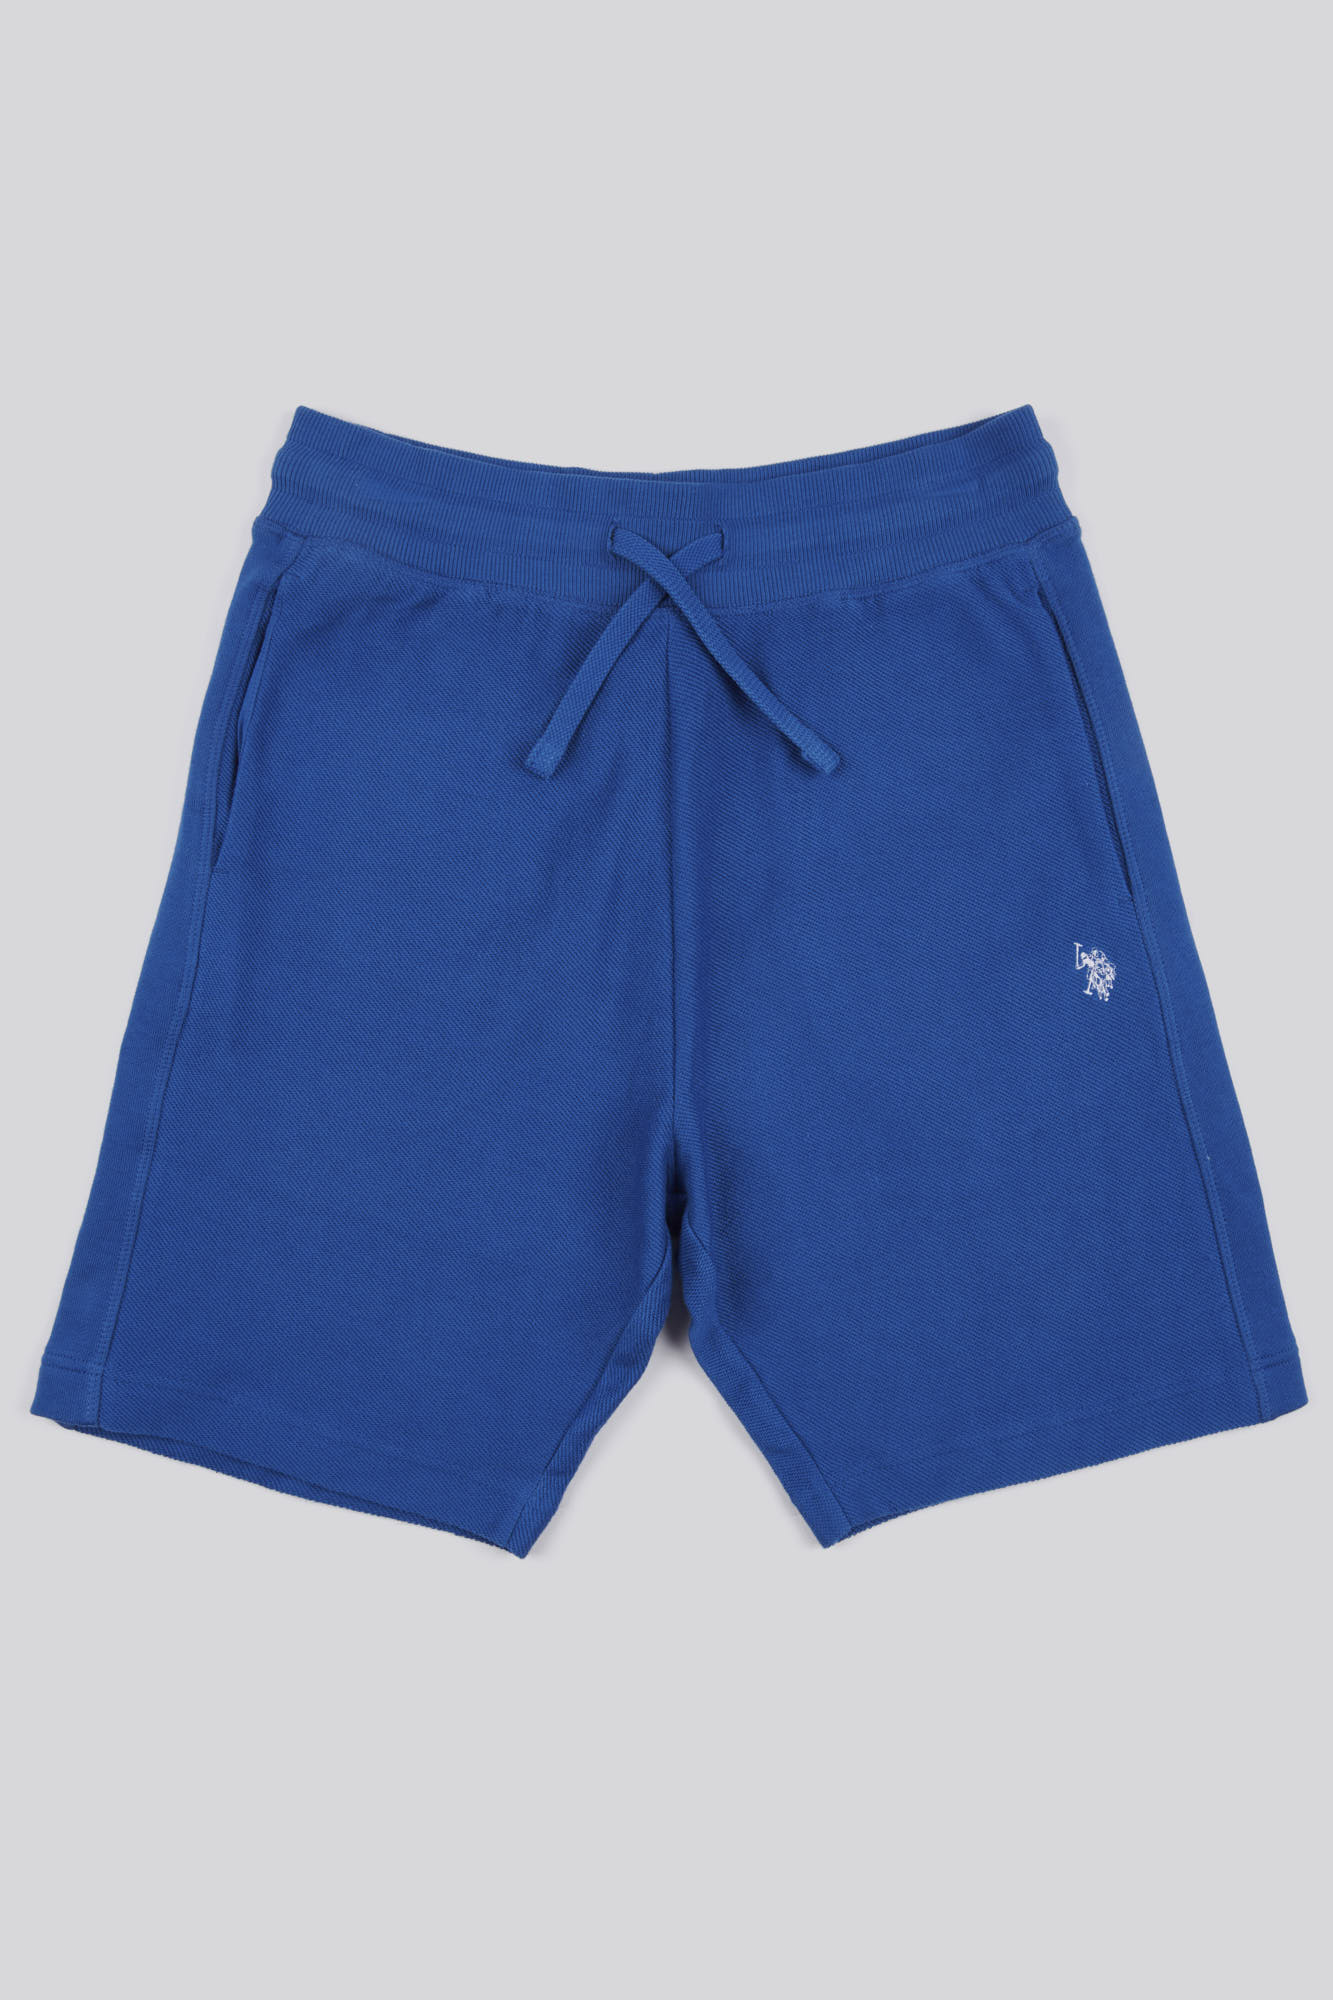 U.S. Polo Assn. Mens Classic Fit Texture Reverse Shorts in Deja Vu Blue